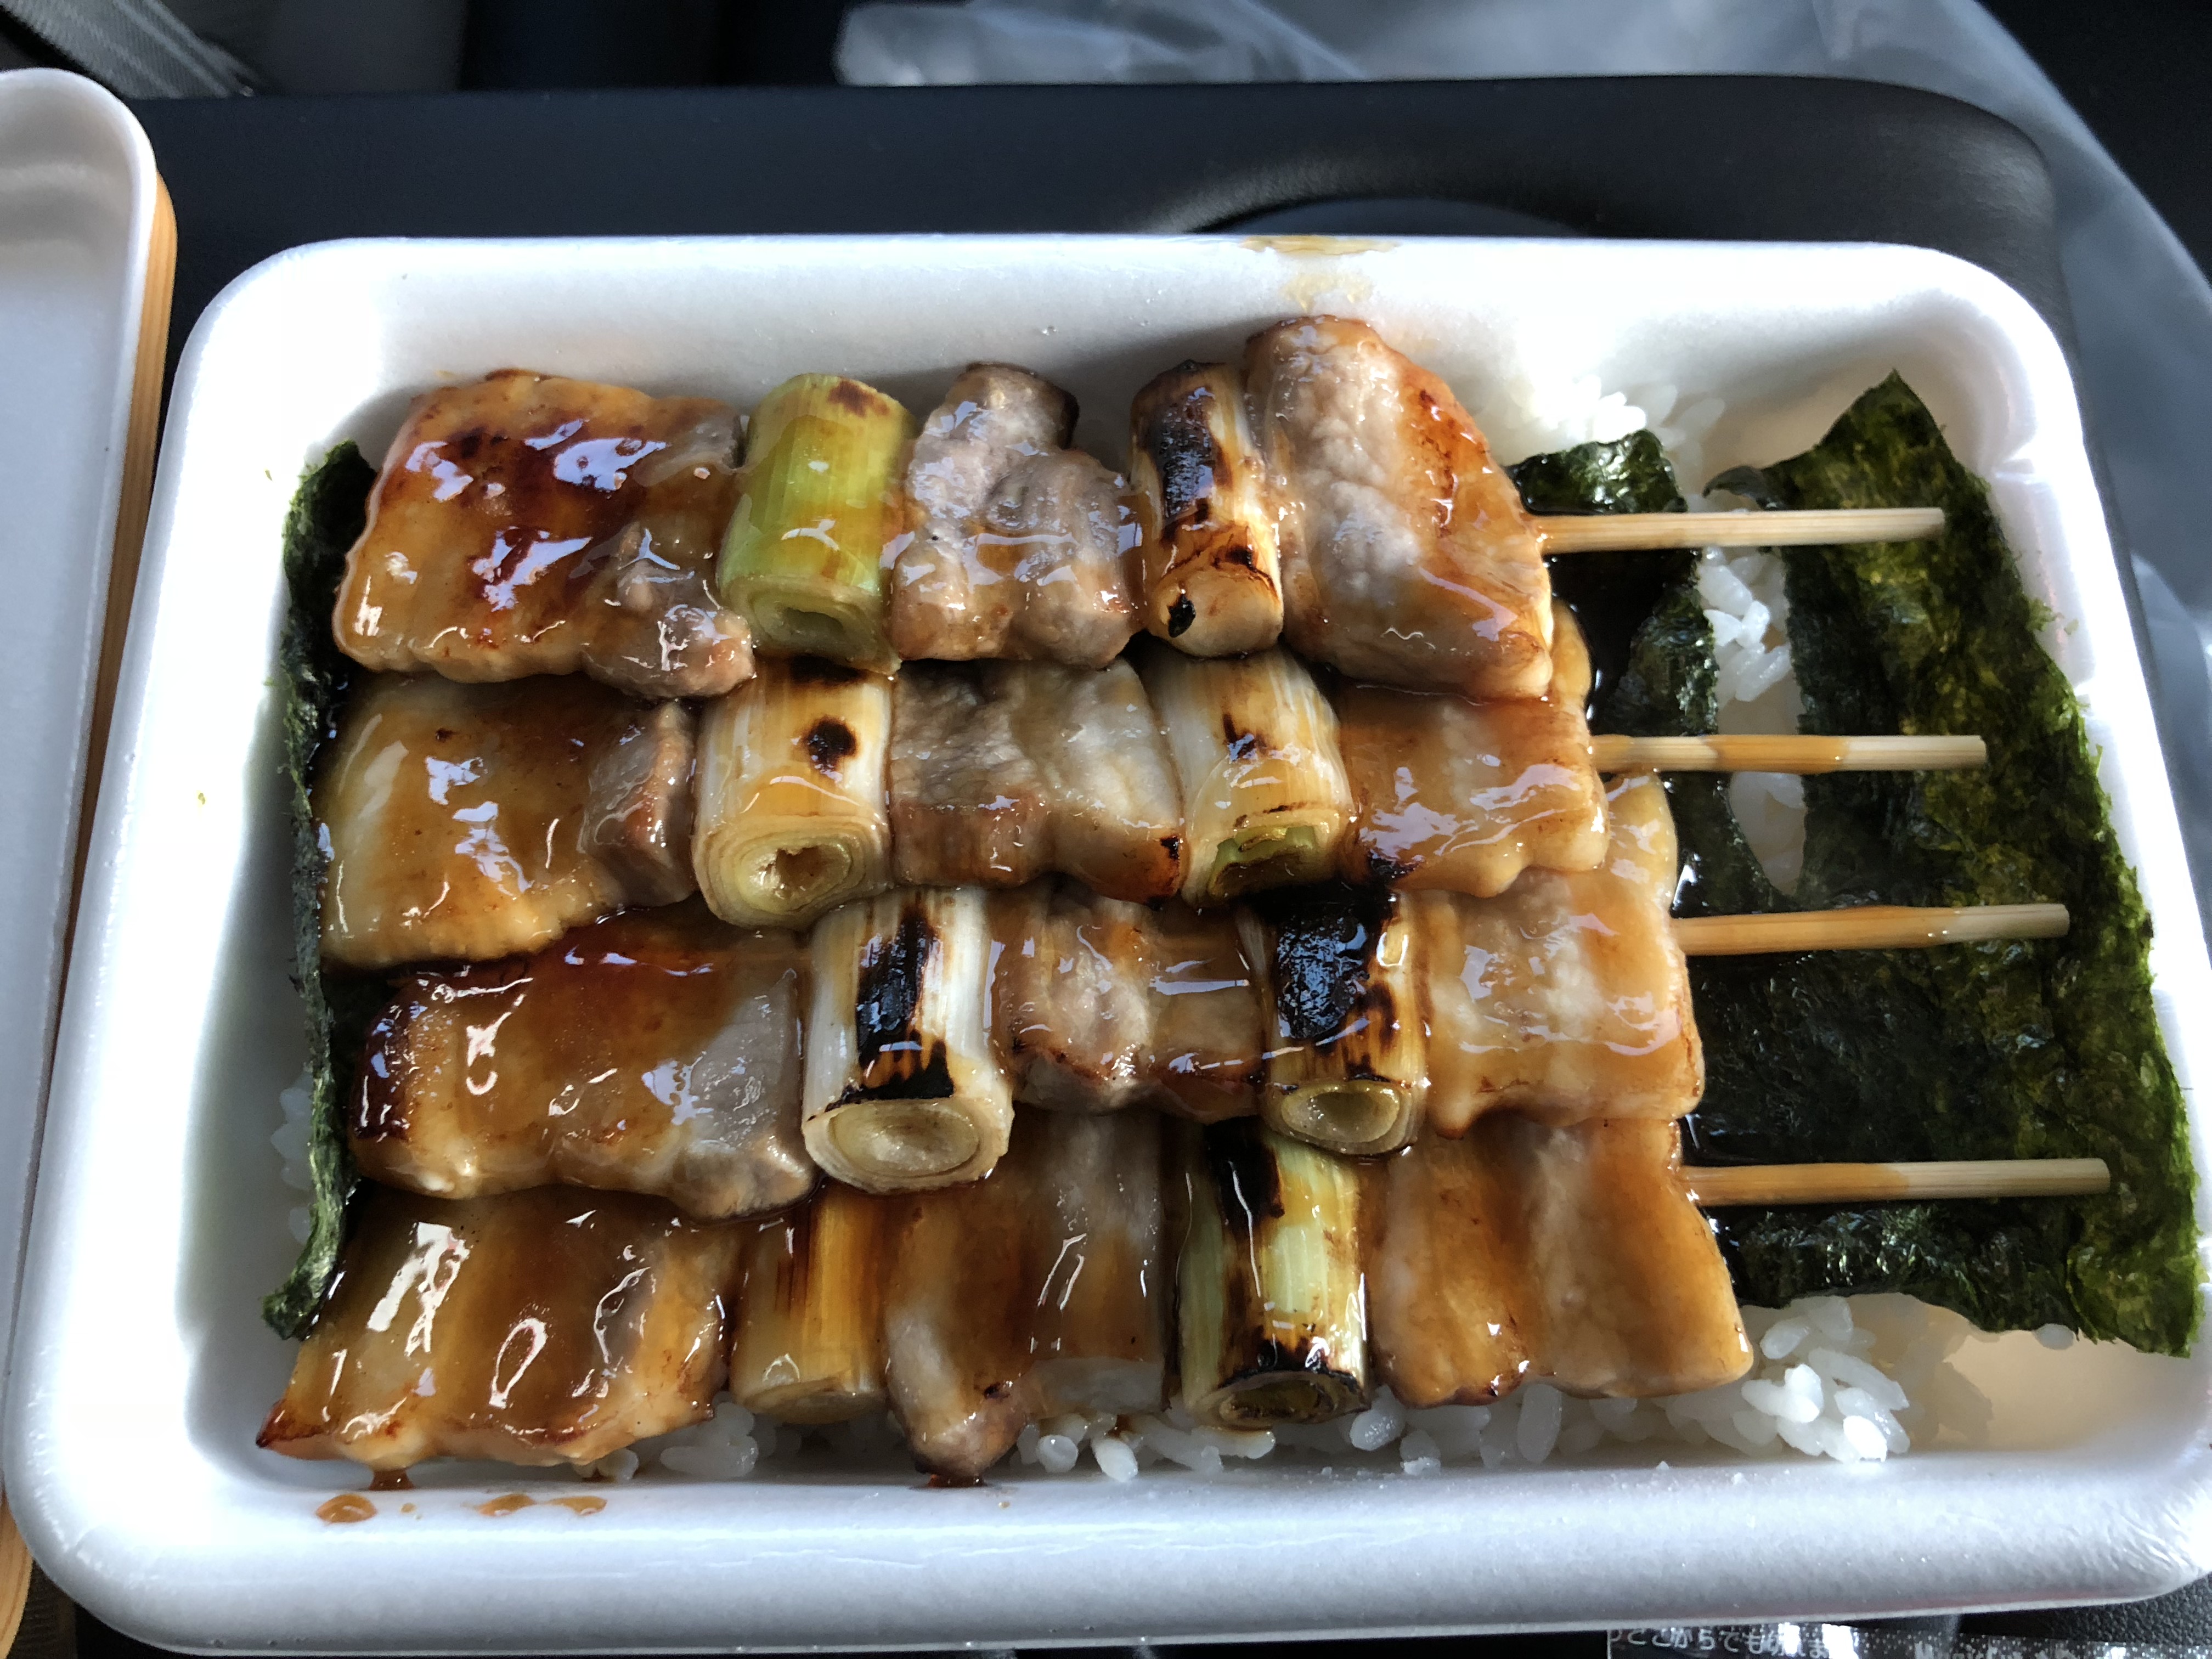 ハセガワストア ハセスト でやきとり弁当を食べてきた 道産子コスケの北海道を楽しむブログ